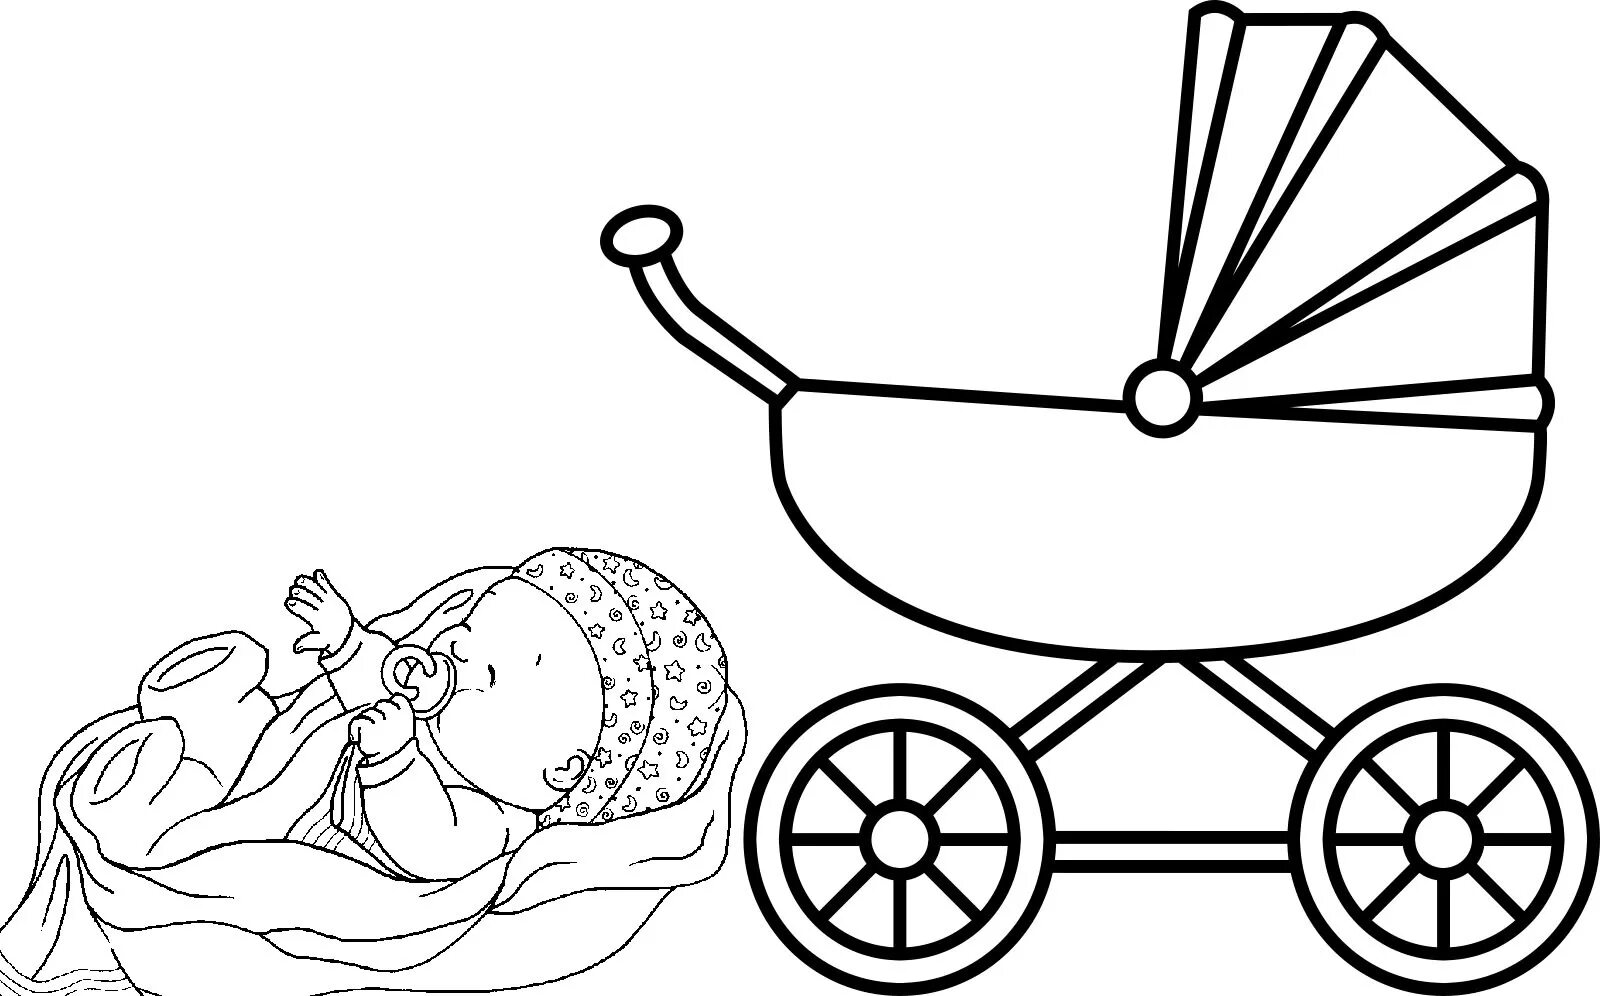 Baby in stroller #1